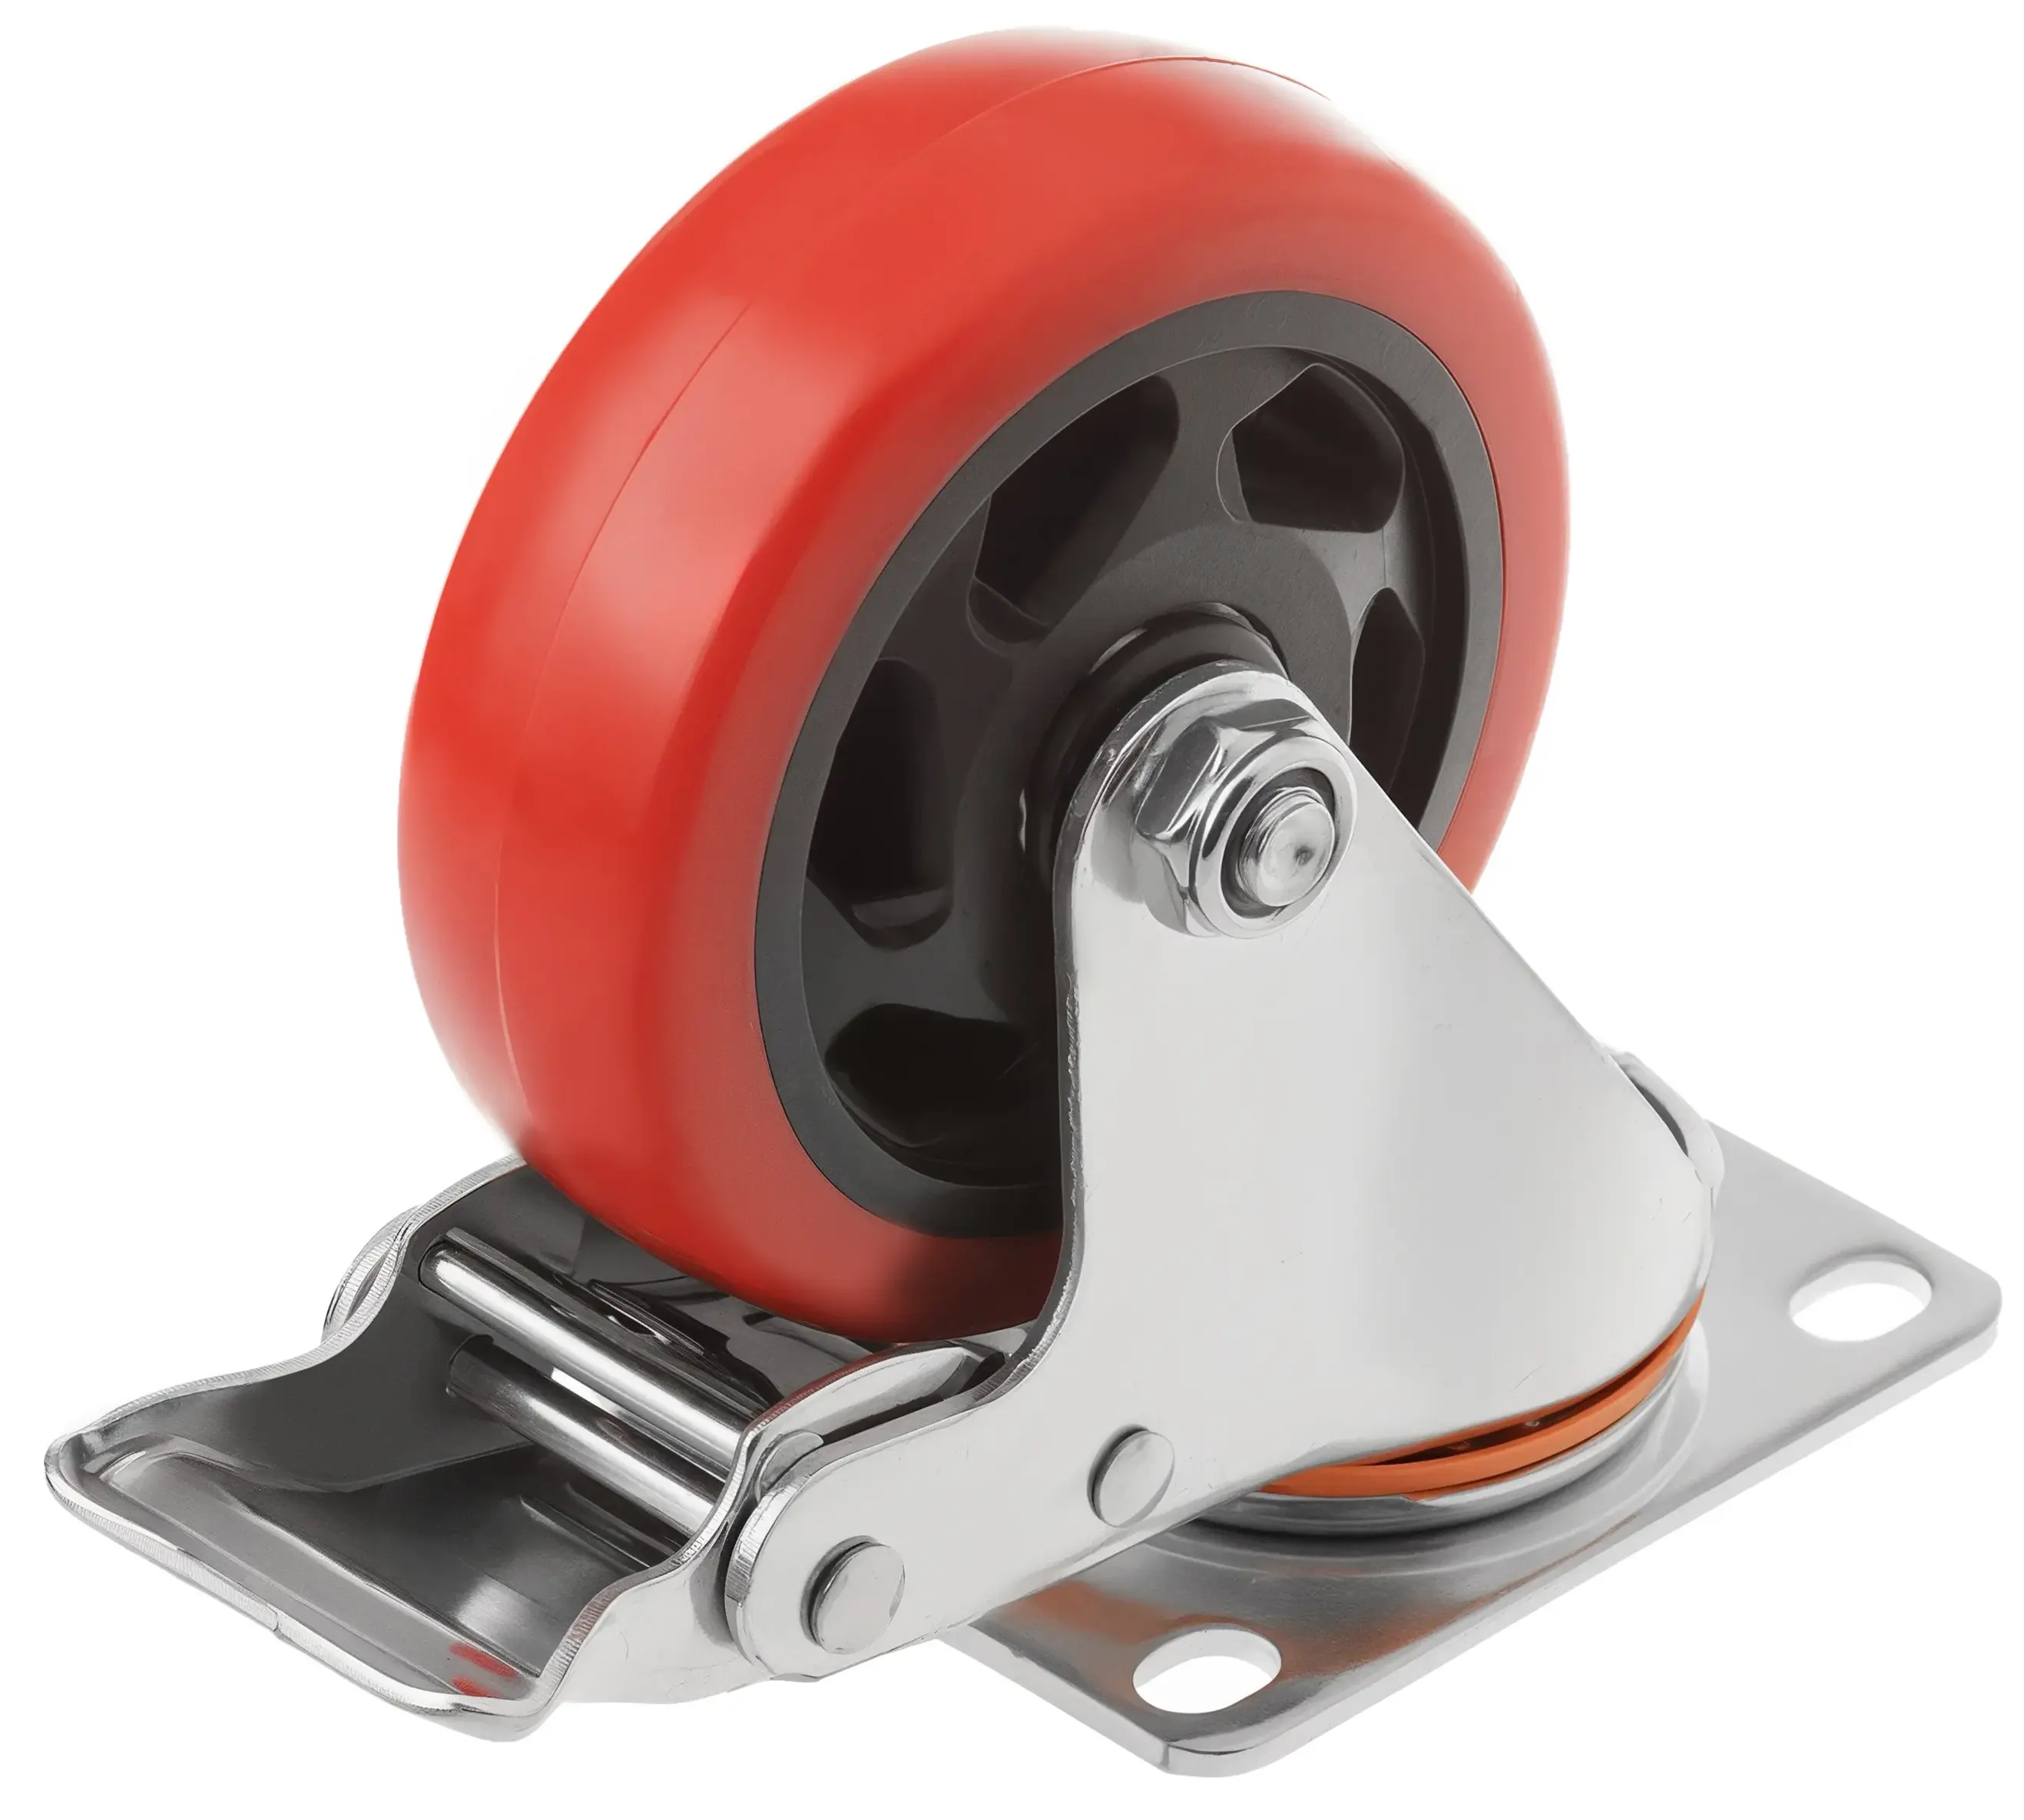 330100Sb - Полиуретановое красное колесо 100 мм (поворотн.площ, тормоз, двойной шарикоподш.)